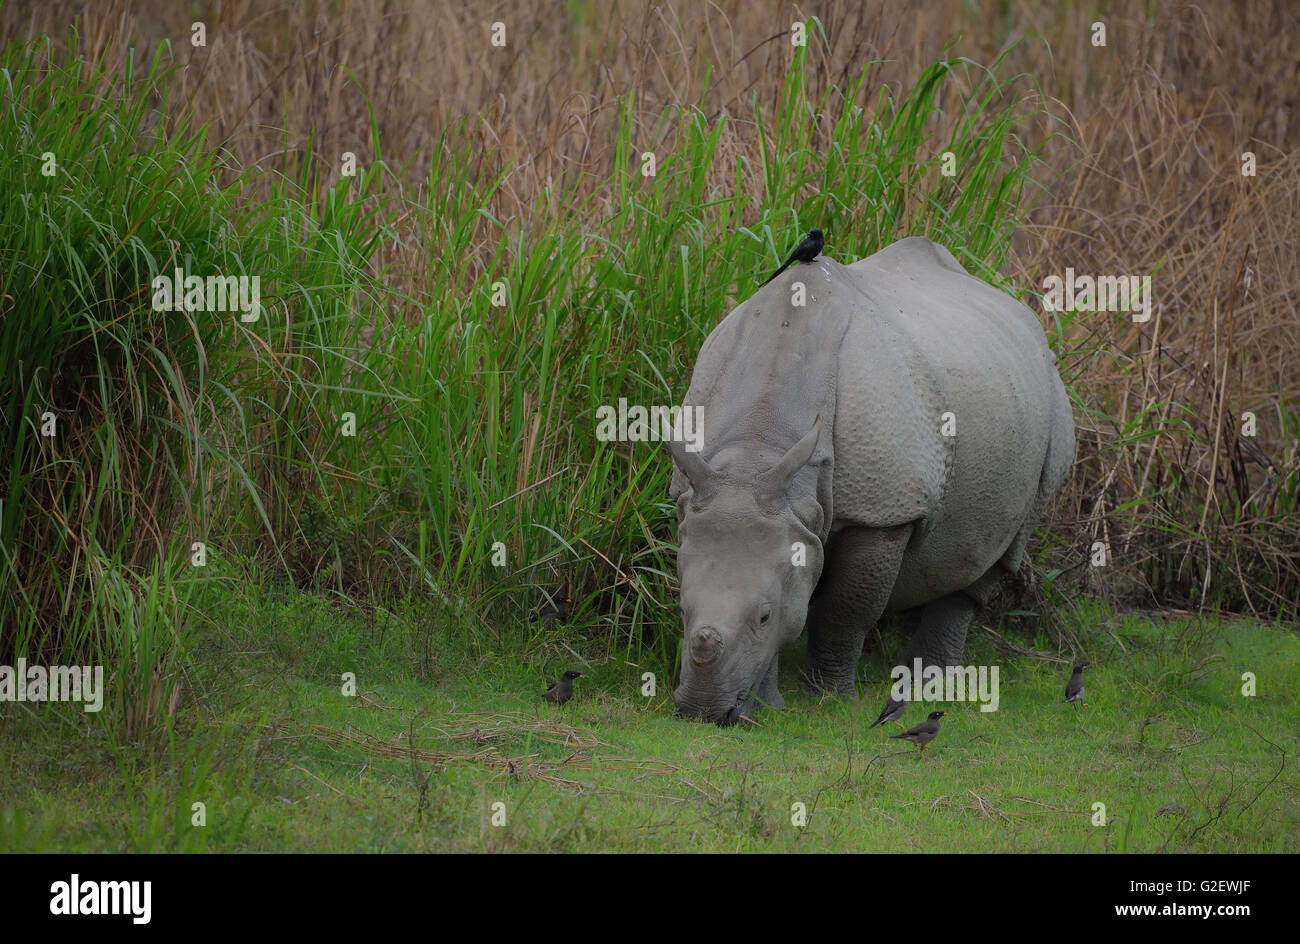 Rhinocéros indien ou d'Indien Grand rhinocéros à une corne (Rhinoceros unicornis), avec des oiseaux, le parc national de Kaziranga, Inde Banque D'Images